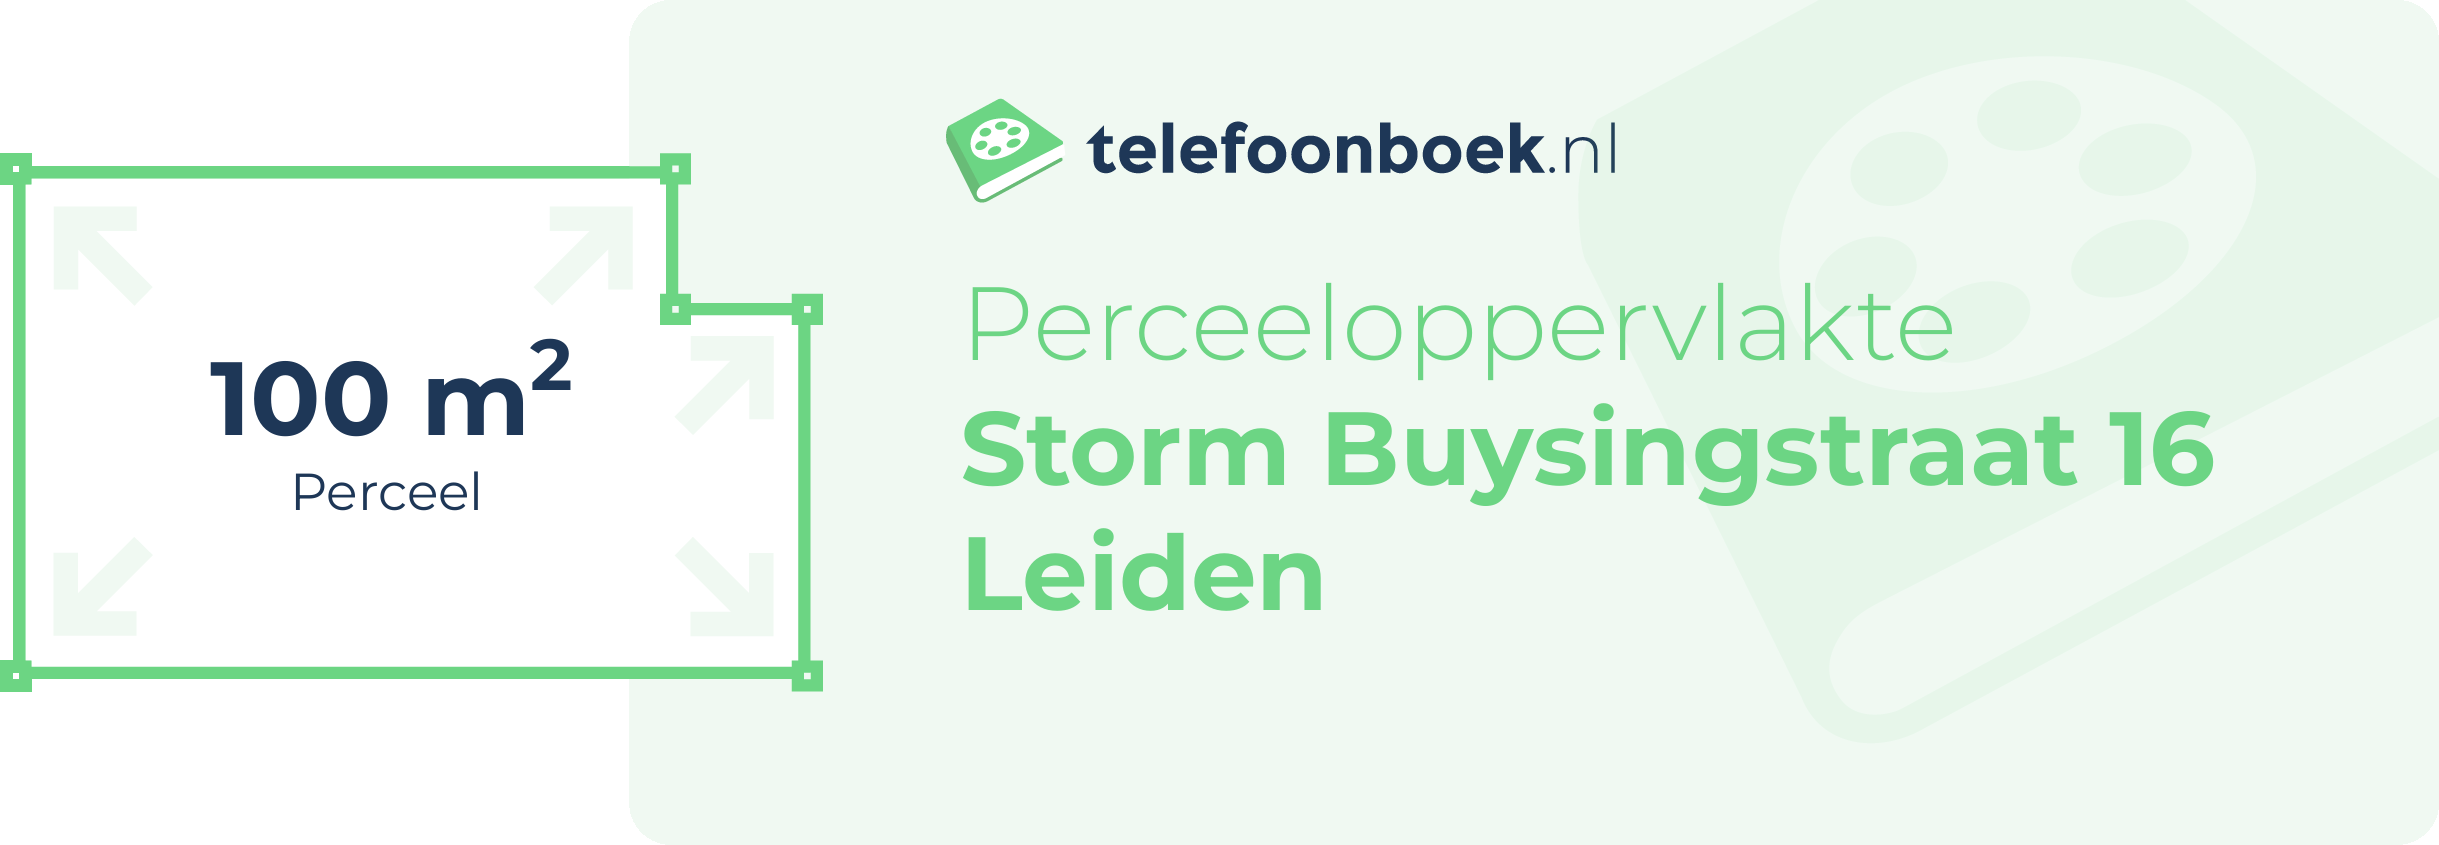 Perceeloppervlakte Storm Buysingstraat 16 Leiden